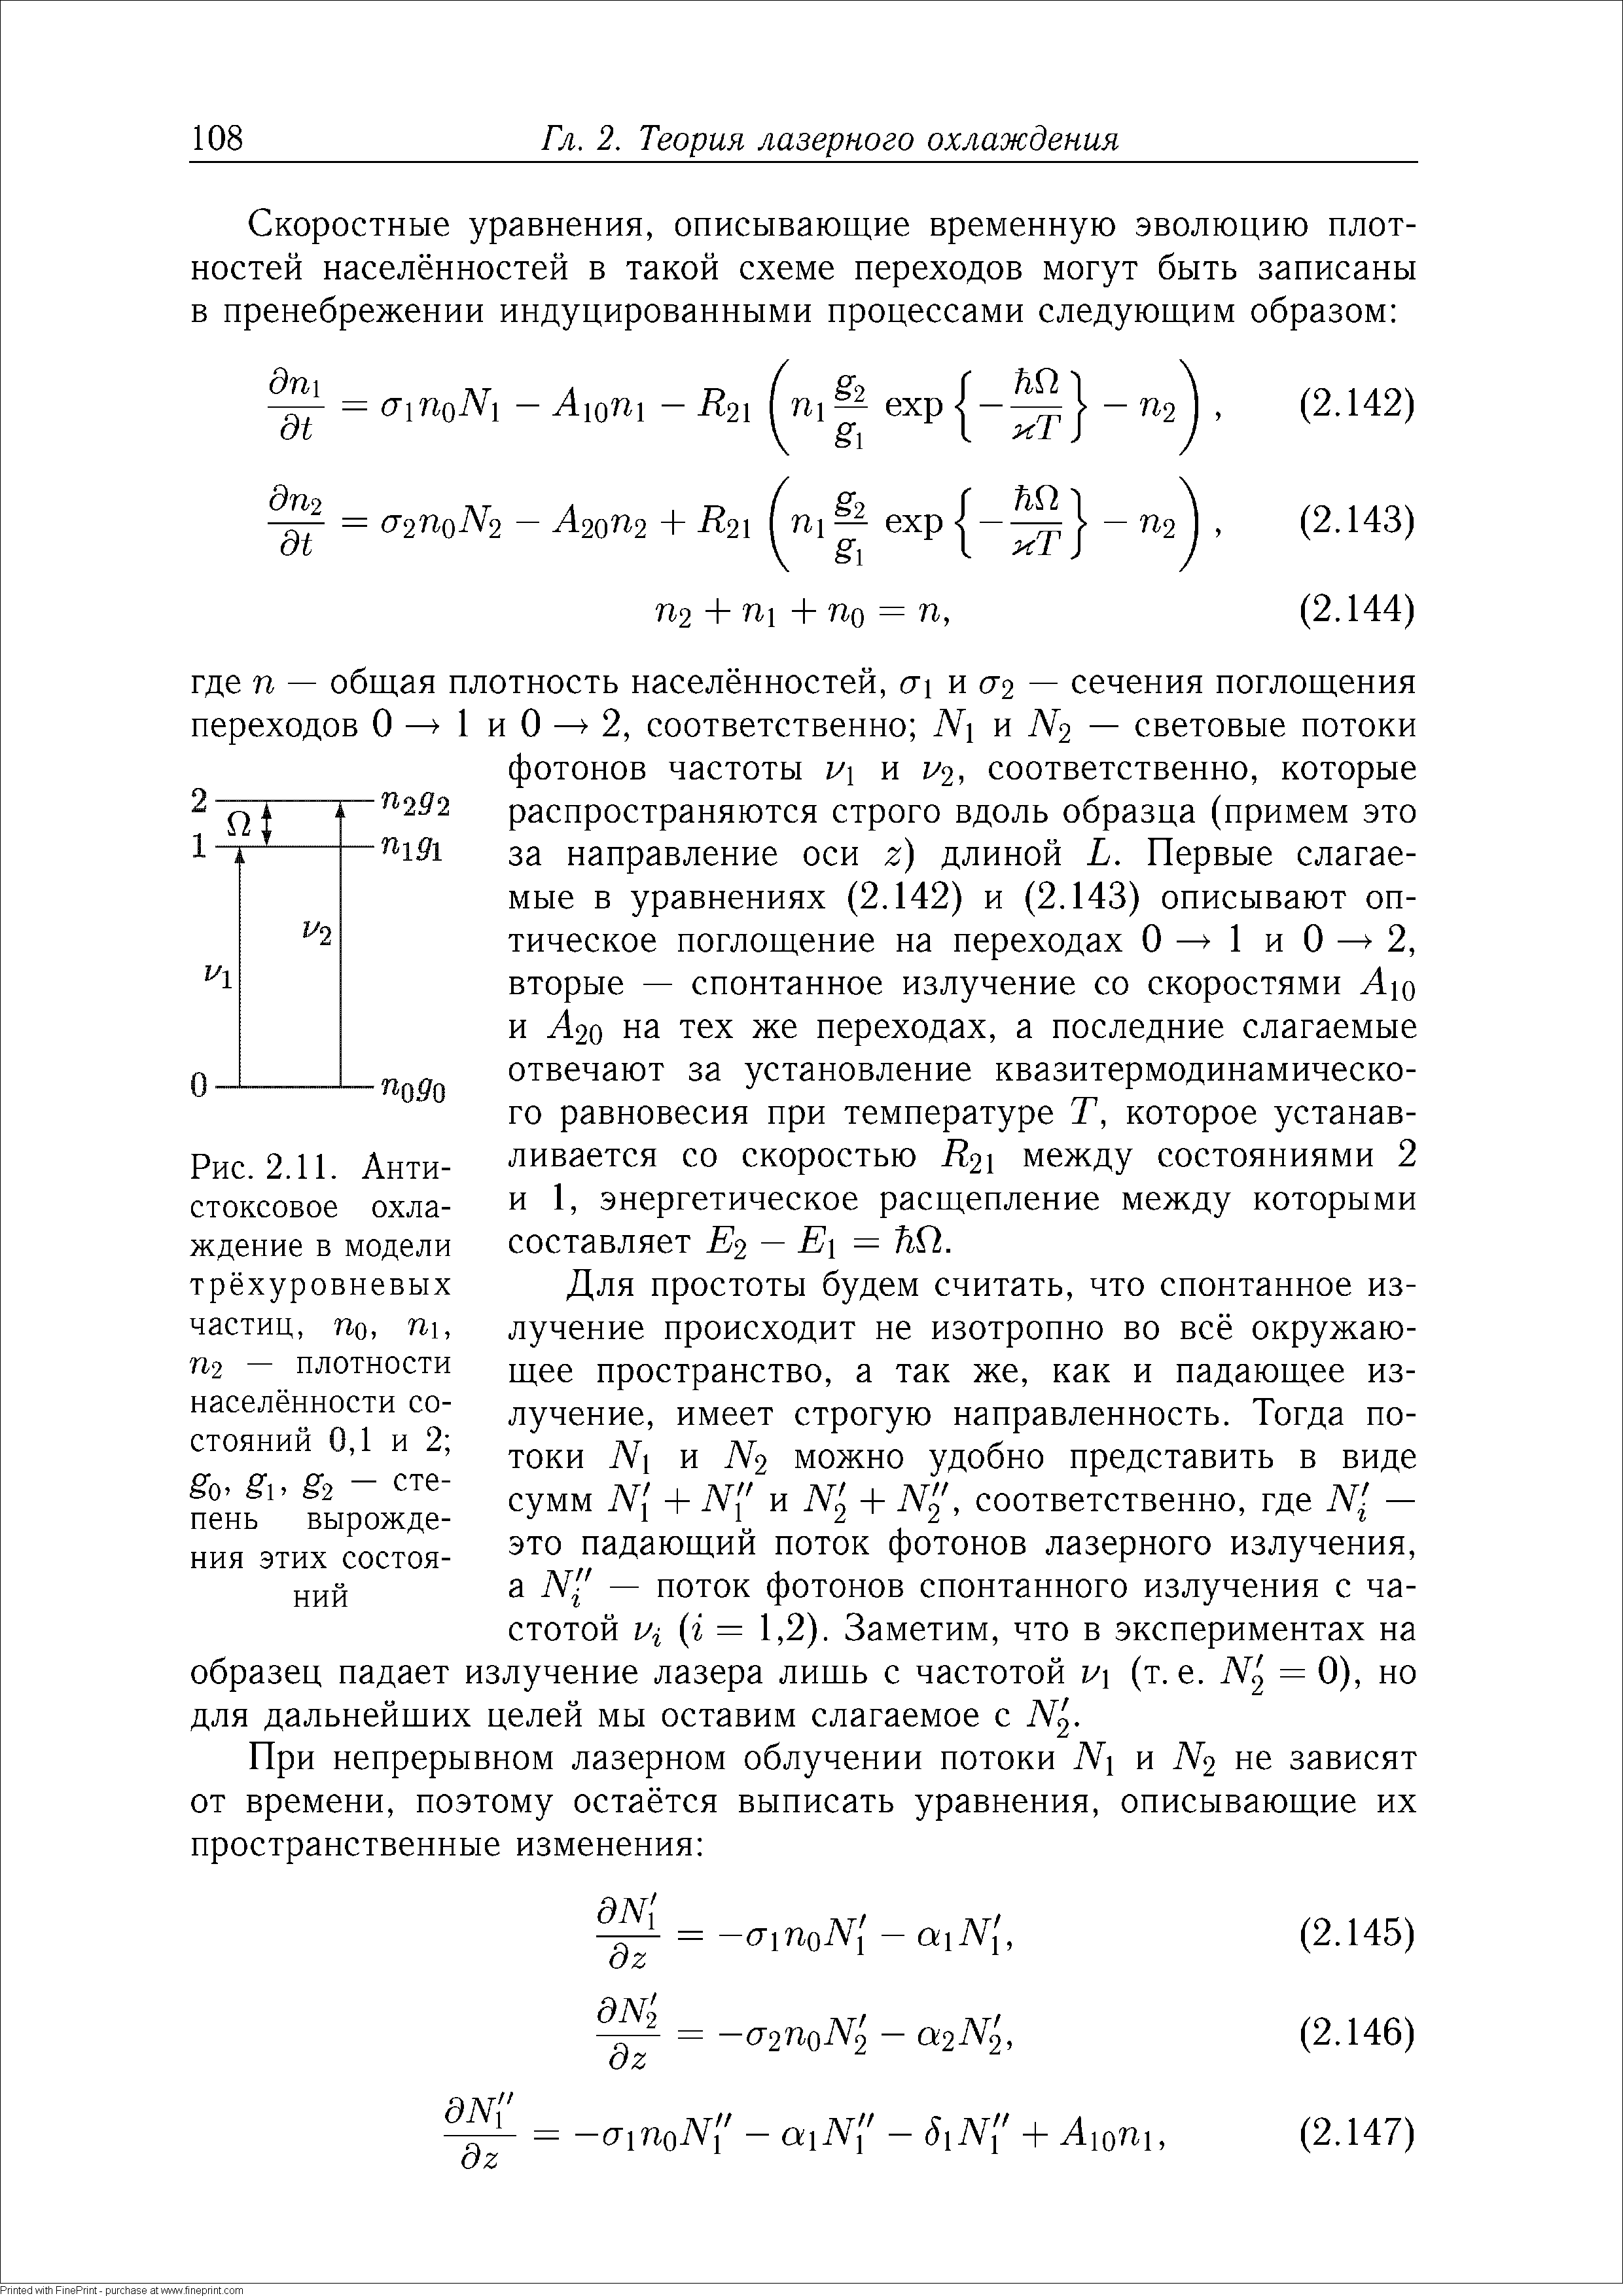 Рис. 2.11. Антистоксовое охлаждение в модели трёхуровневых частиц, По, Пи П2 — плотности населённости состояний 0,1 и 2 
